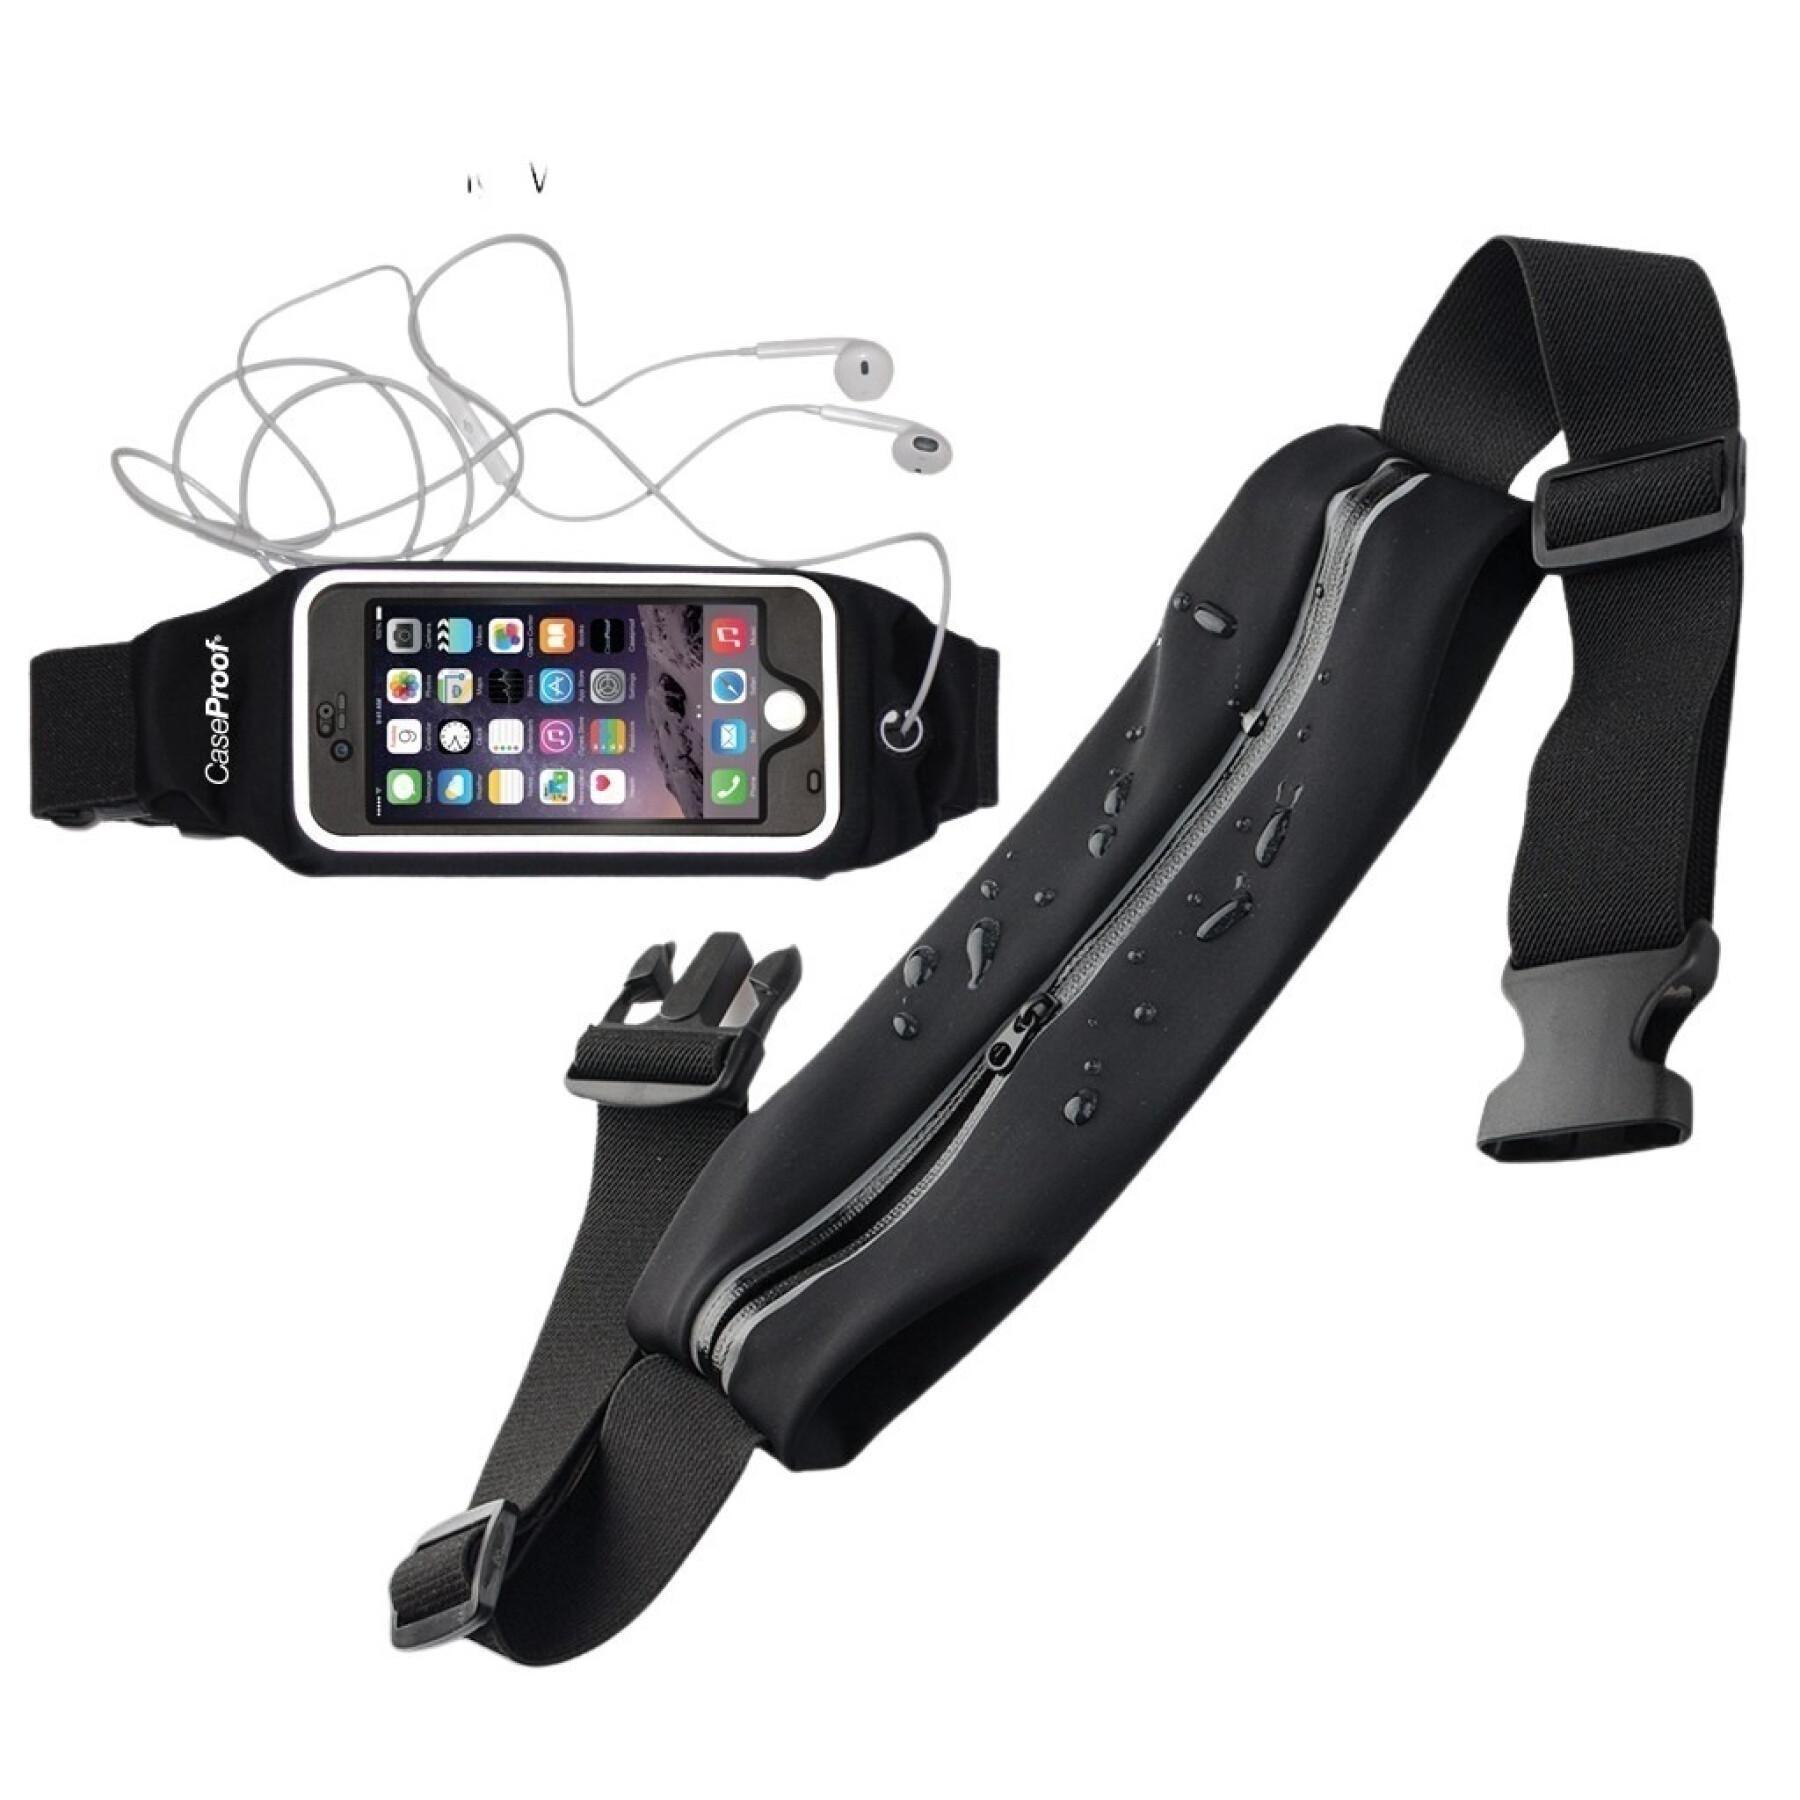 Cinturón de running impermeable compatible con el smartphone CaseProof